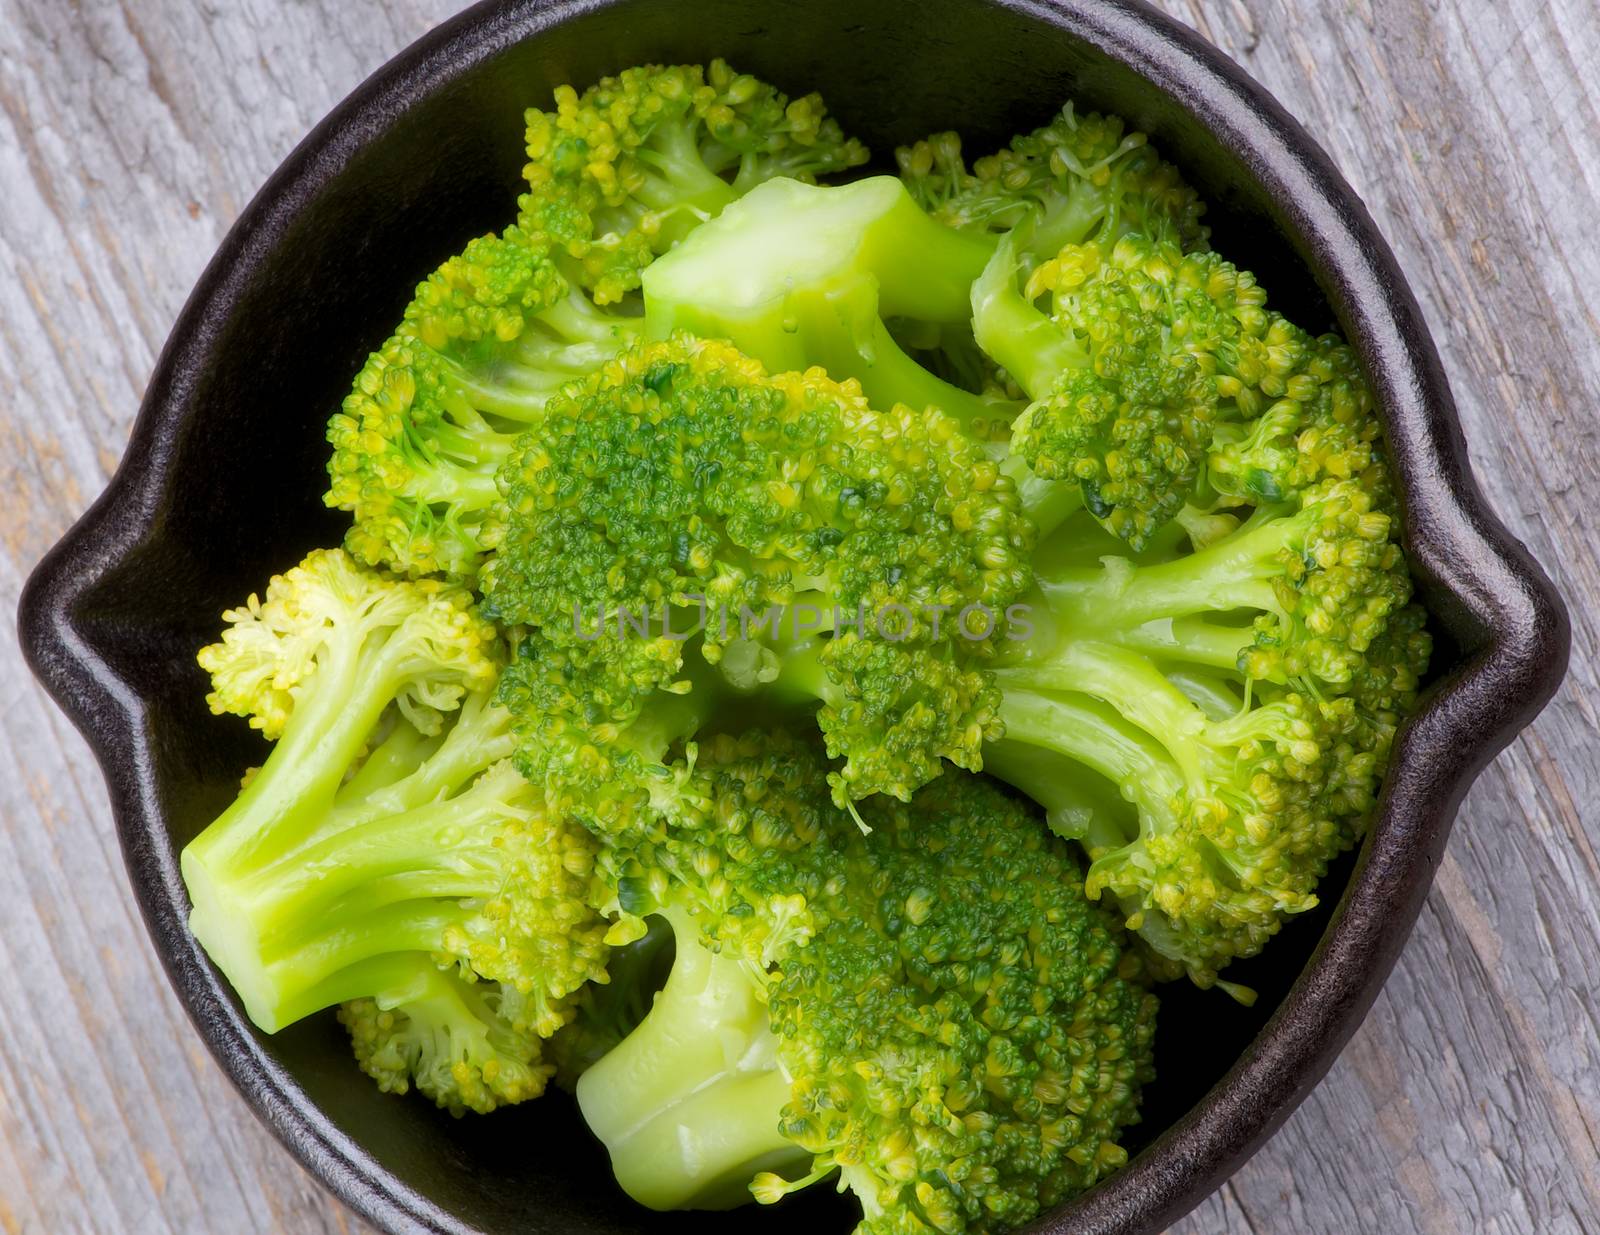 Crunchy Boiled Broccoli by zhekos